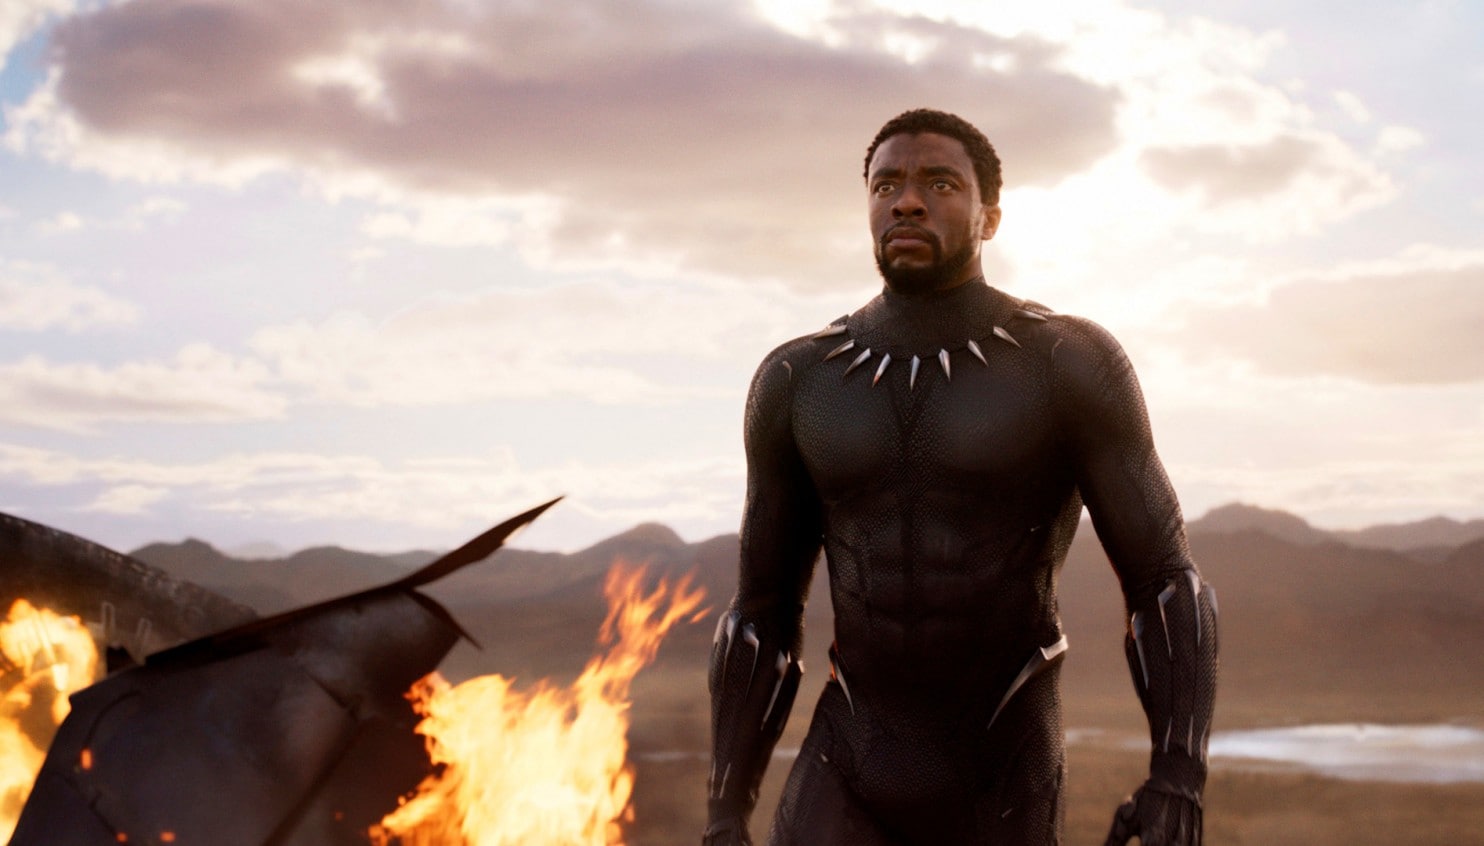 Black Panther walks through burning wreckage